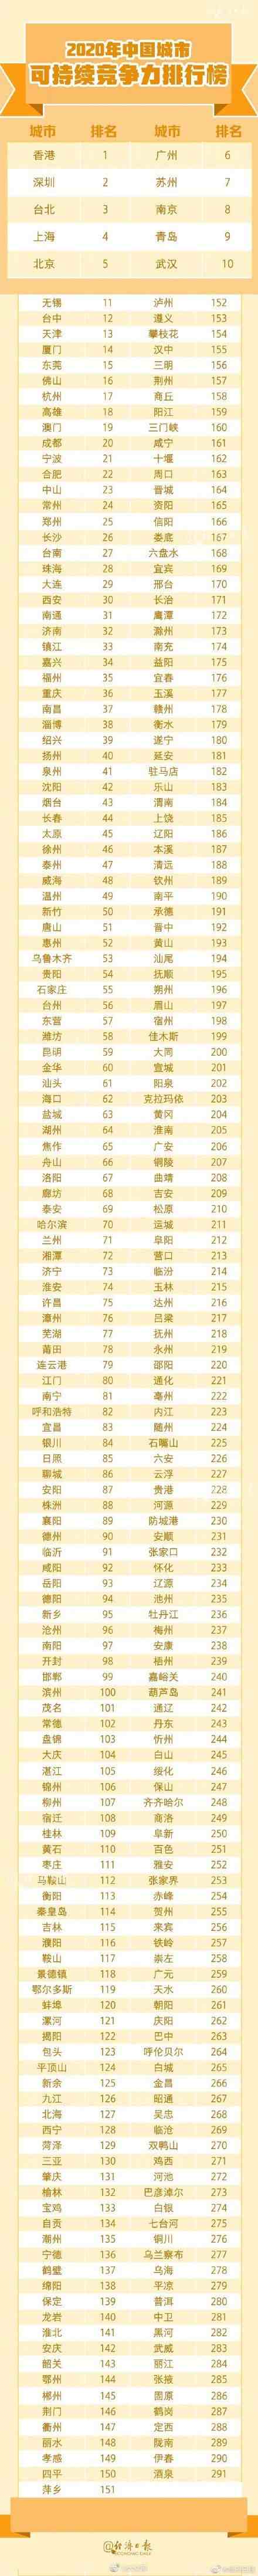 中国城市综合经济竞争力排名：青岛17、济南29